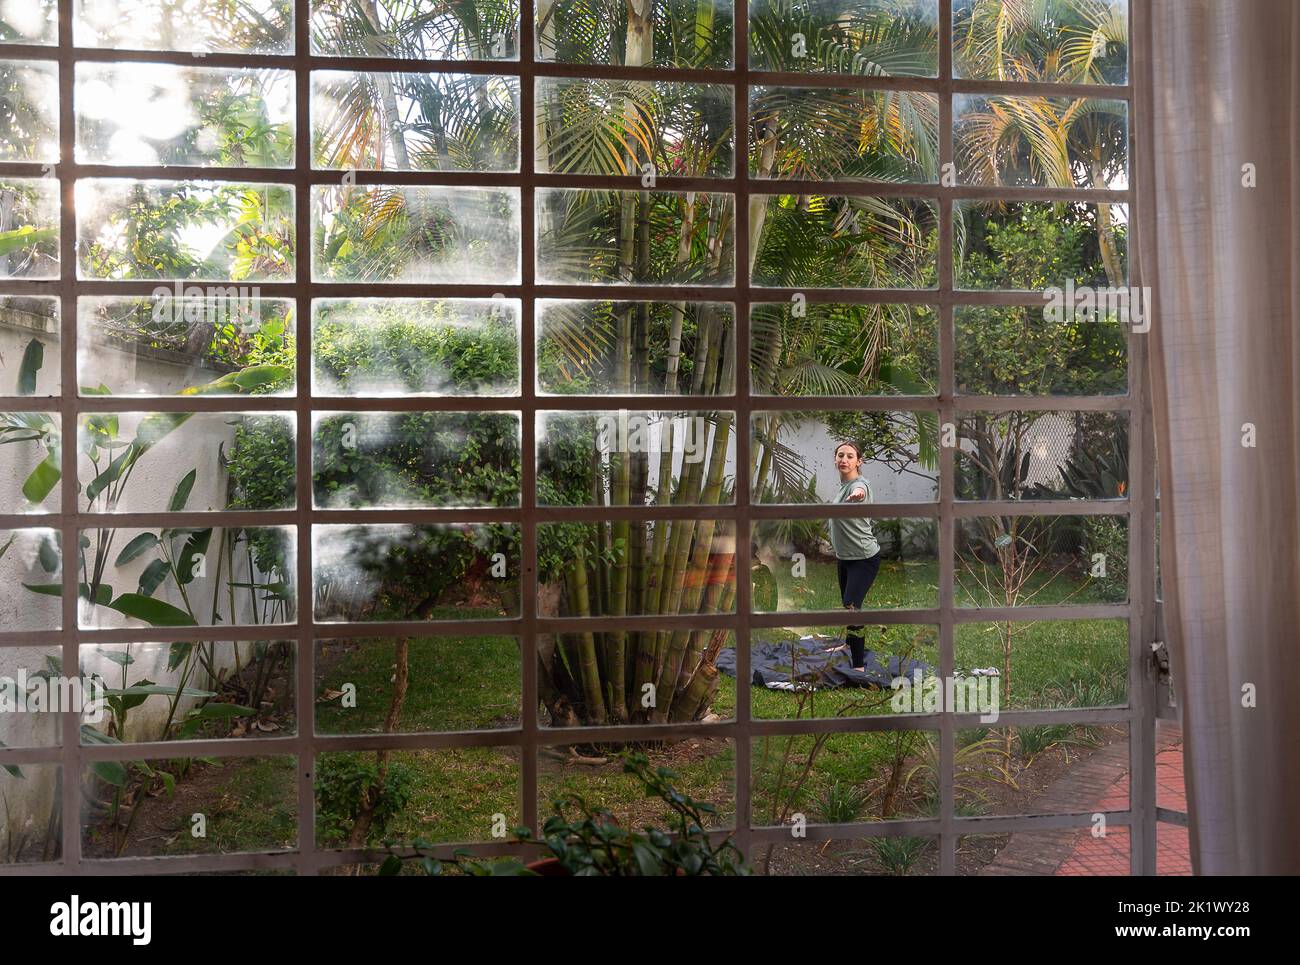 Frau praktiziert Yoga im Hinterhof, umgeben von Pflanzen und Bäumen, eingefangen durch das Fenster des Hauses mit tropischen Vibes und Palmen Stockfoto